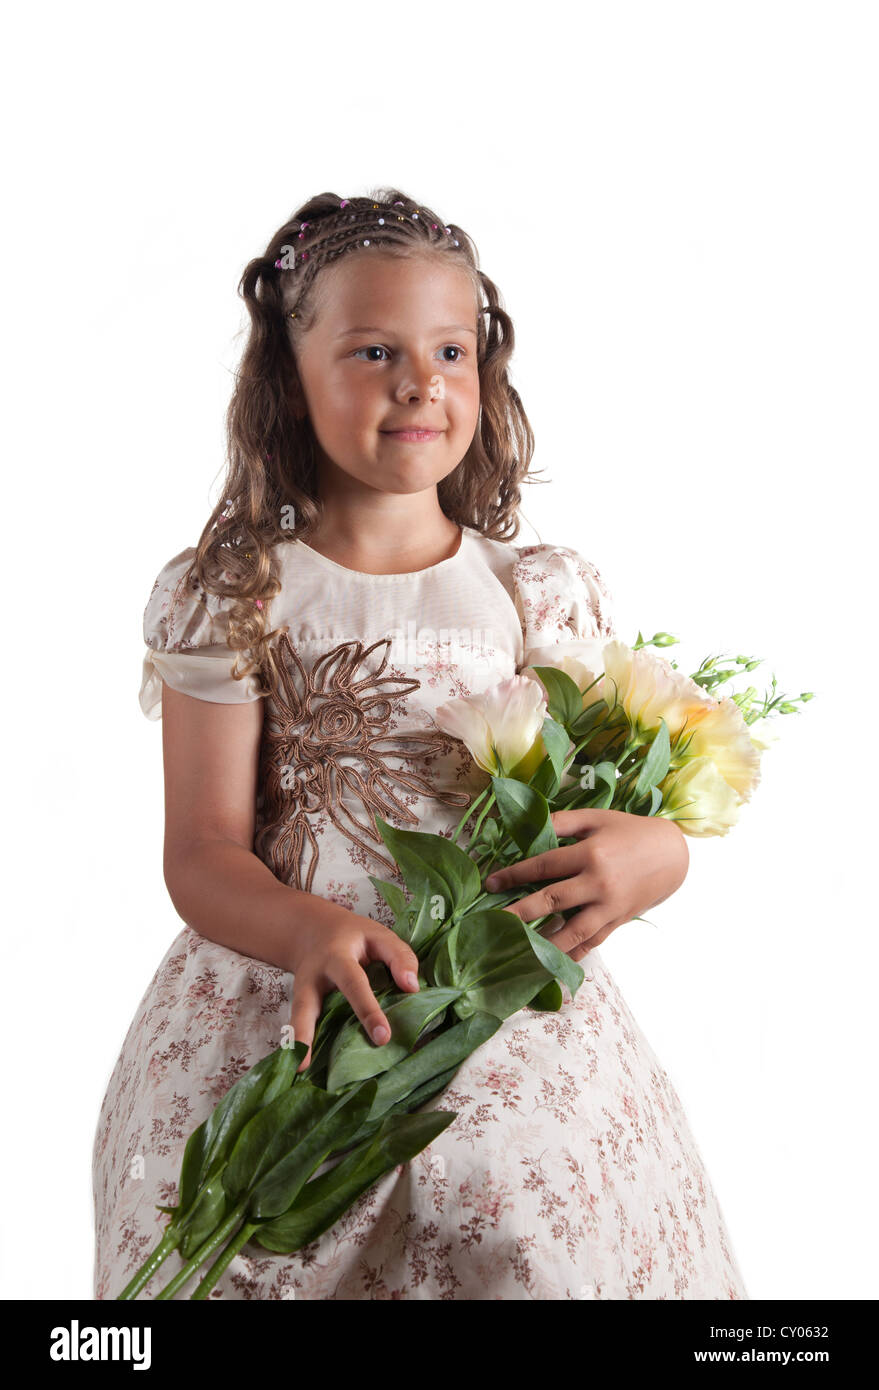 Niedliche kleine Mädchen mit Zopf Frisur hält Blumen, isoliert auf weißem Hintergrund Stockfoto